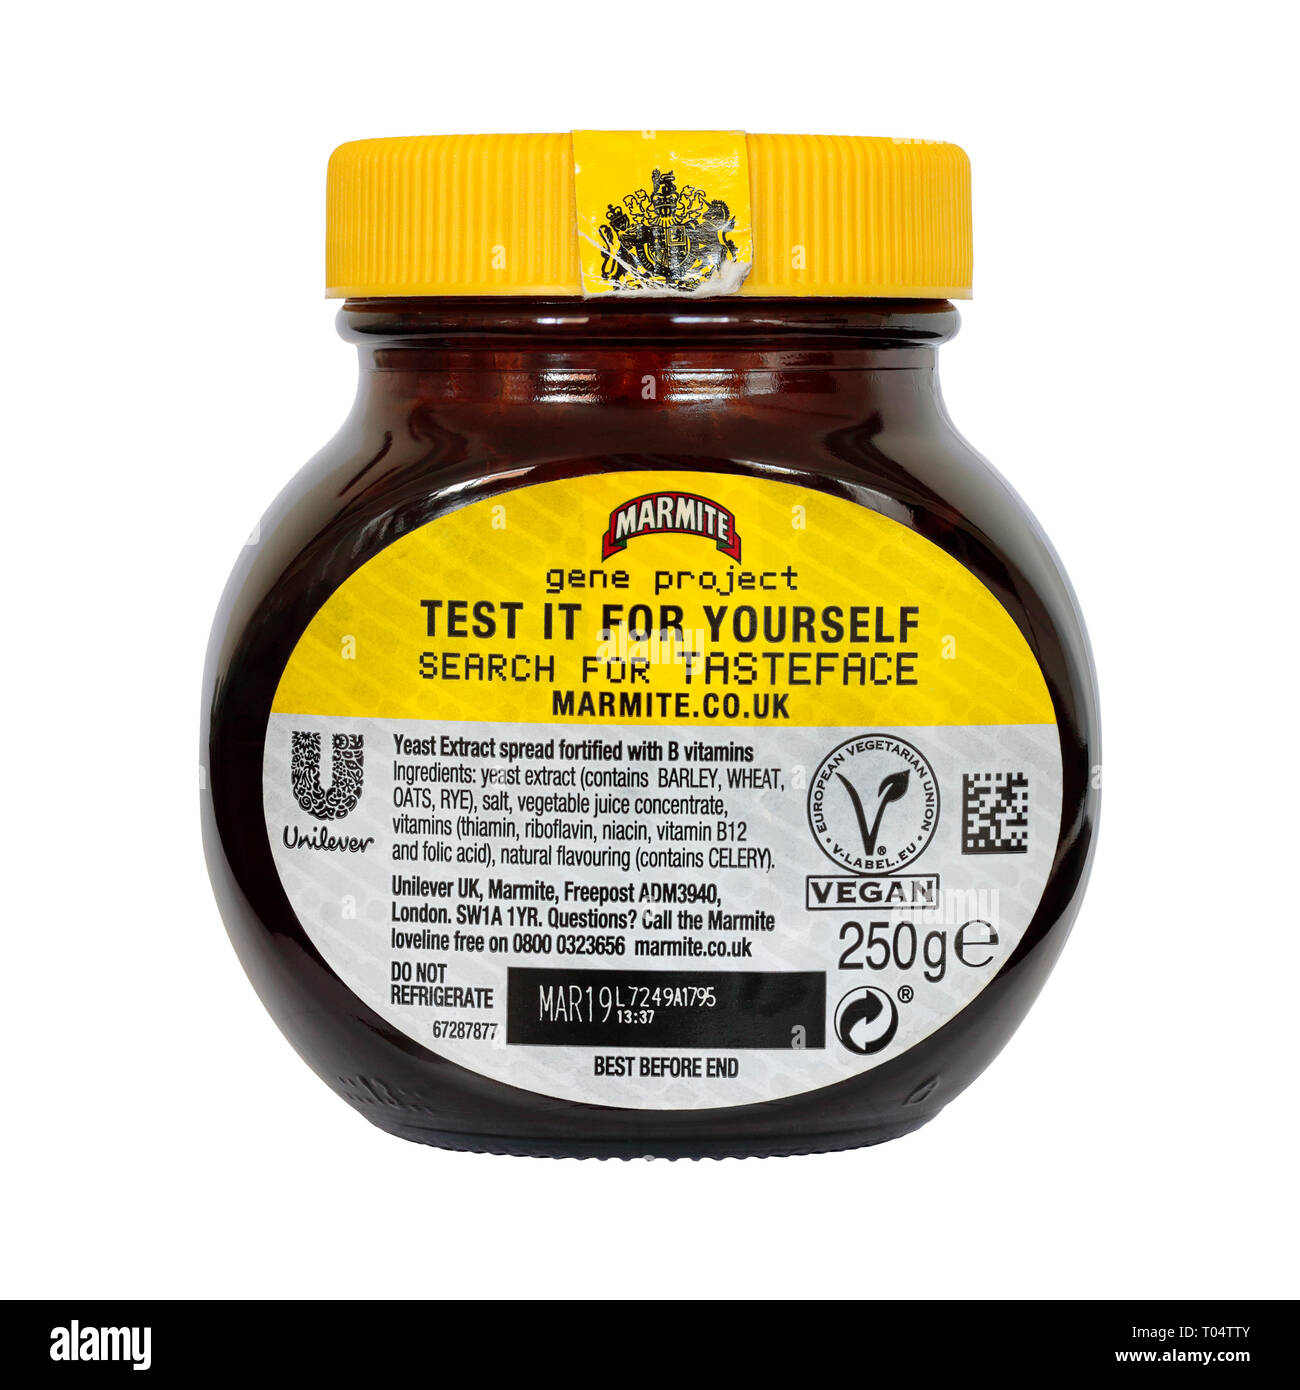 Vista posteriore di un 250g giara di marmite gene edizione del progetto isolato su uno sfondo bianco con la migliore prima di data e Unilever logo e il logo vegan Foto Stock